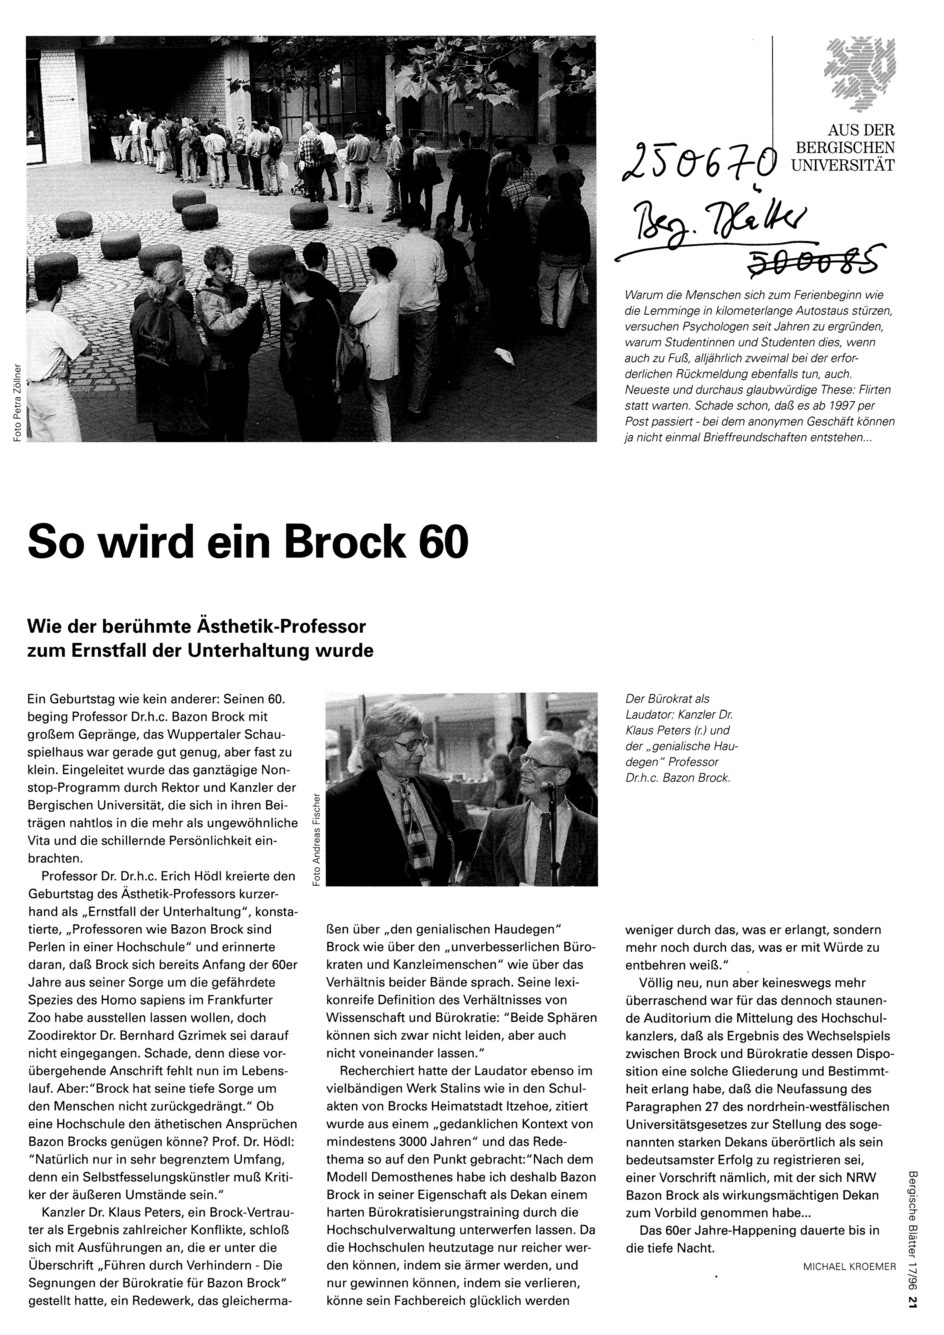 "Bergische Blätter" 17/1996, Bild: zum 60. Geburtstag von Bazon brock, 02.06.1996.